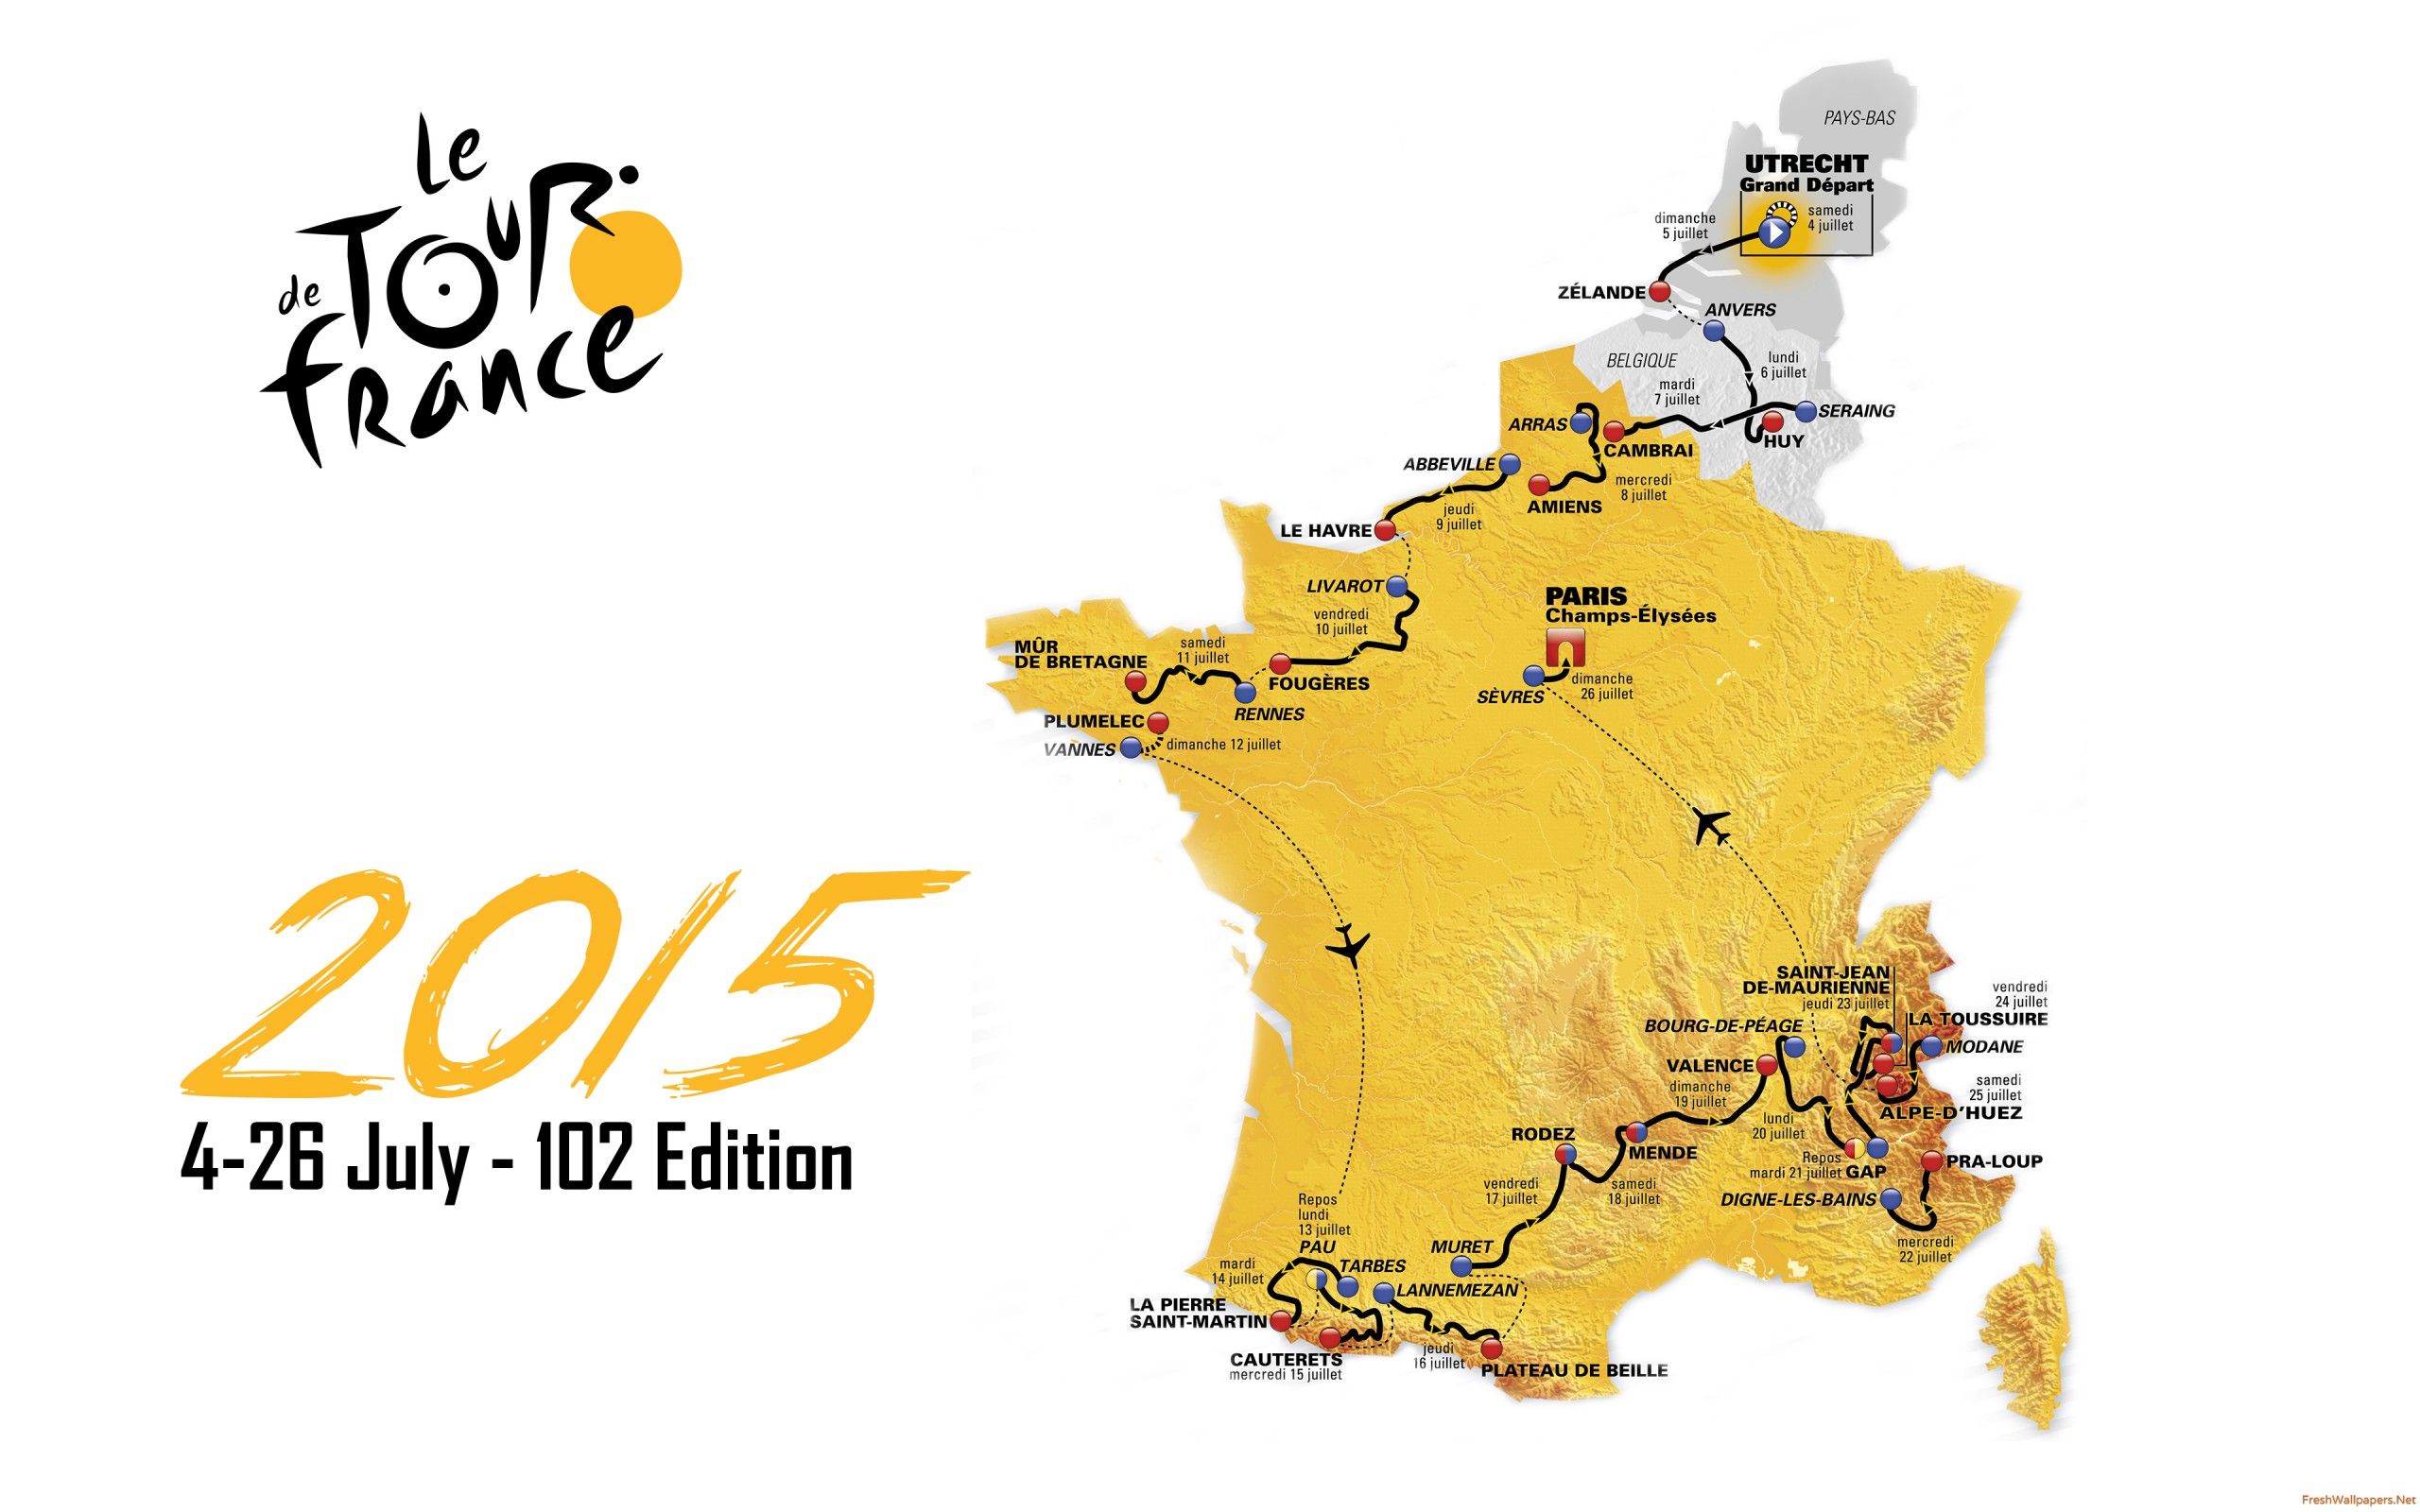 Le Tour De France 2015 Map Route wallpapers | Freshwallpapers